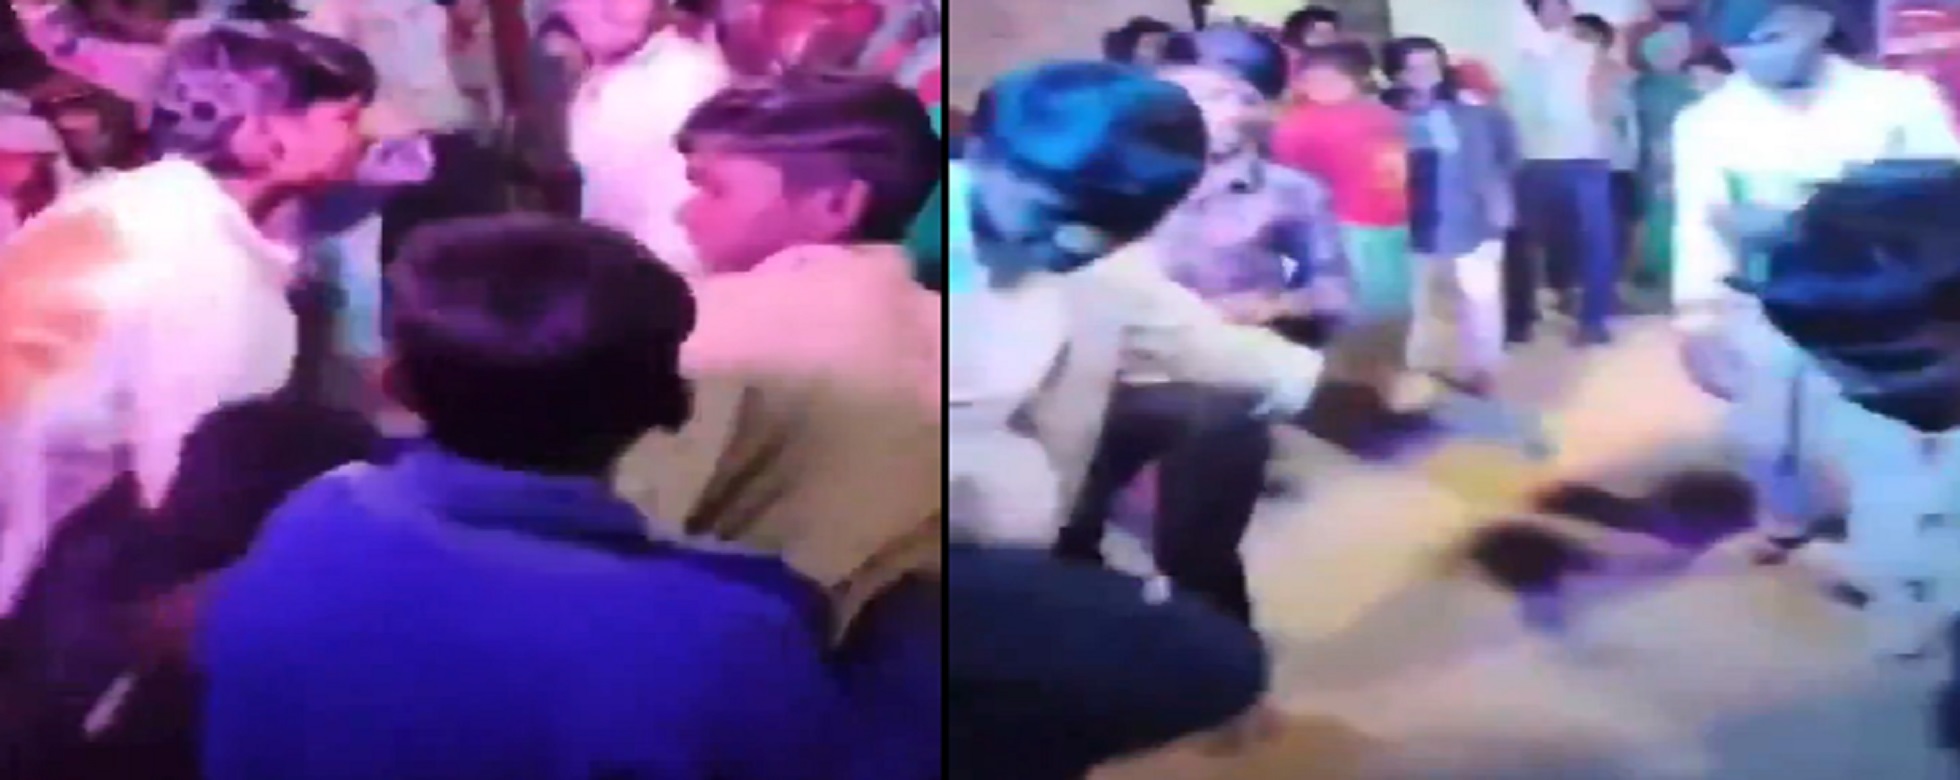 UP Viral Video: मातम में बदली शादी की खुशियां, डीजे पर नाचते समय 15 साल के बच्चे की मौत